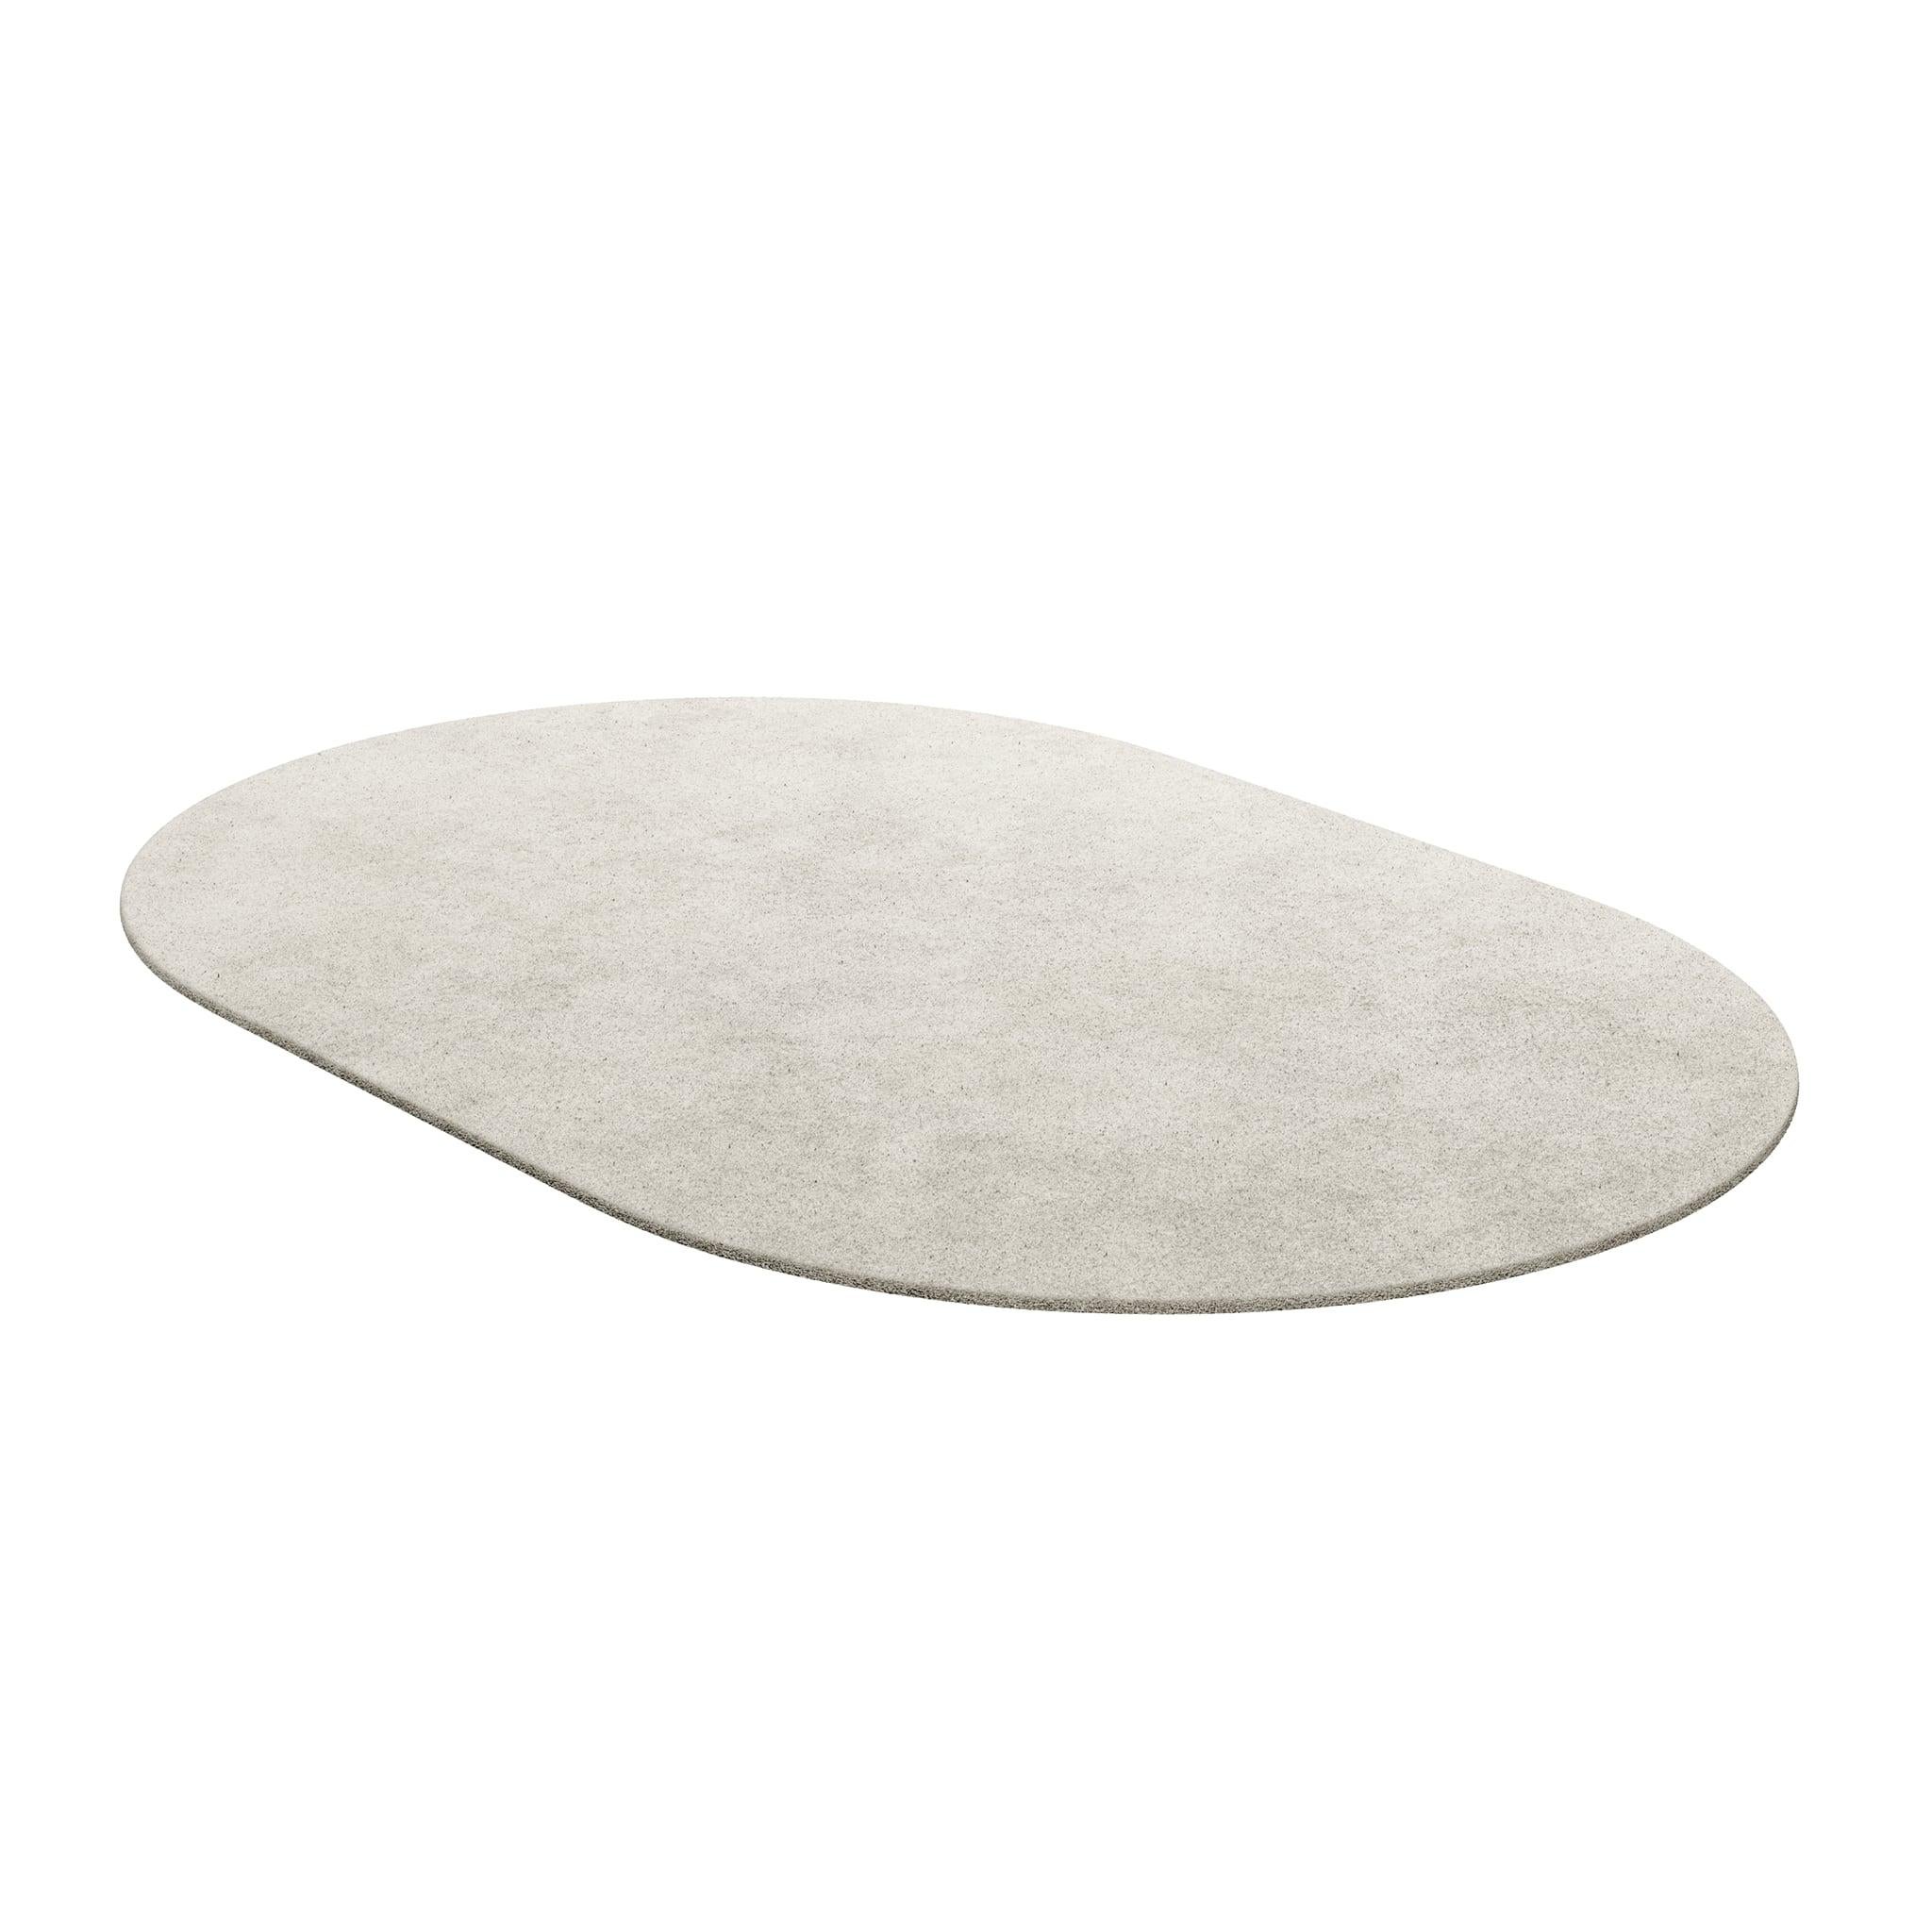 Tapis Oval Ivory #001 ist ein moderner Teppich mit einer regelmäßigen Form. Unsere unentbehrlichen Teppiche sind in verschiedenen Formen und trendigen Farbtönen erhältlich, die mit Bedacht ausgewählt wurden, um eine Inneneinrichtung zu ergänzen, die